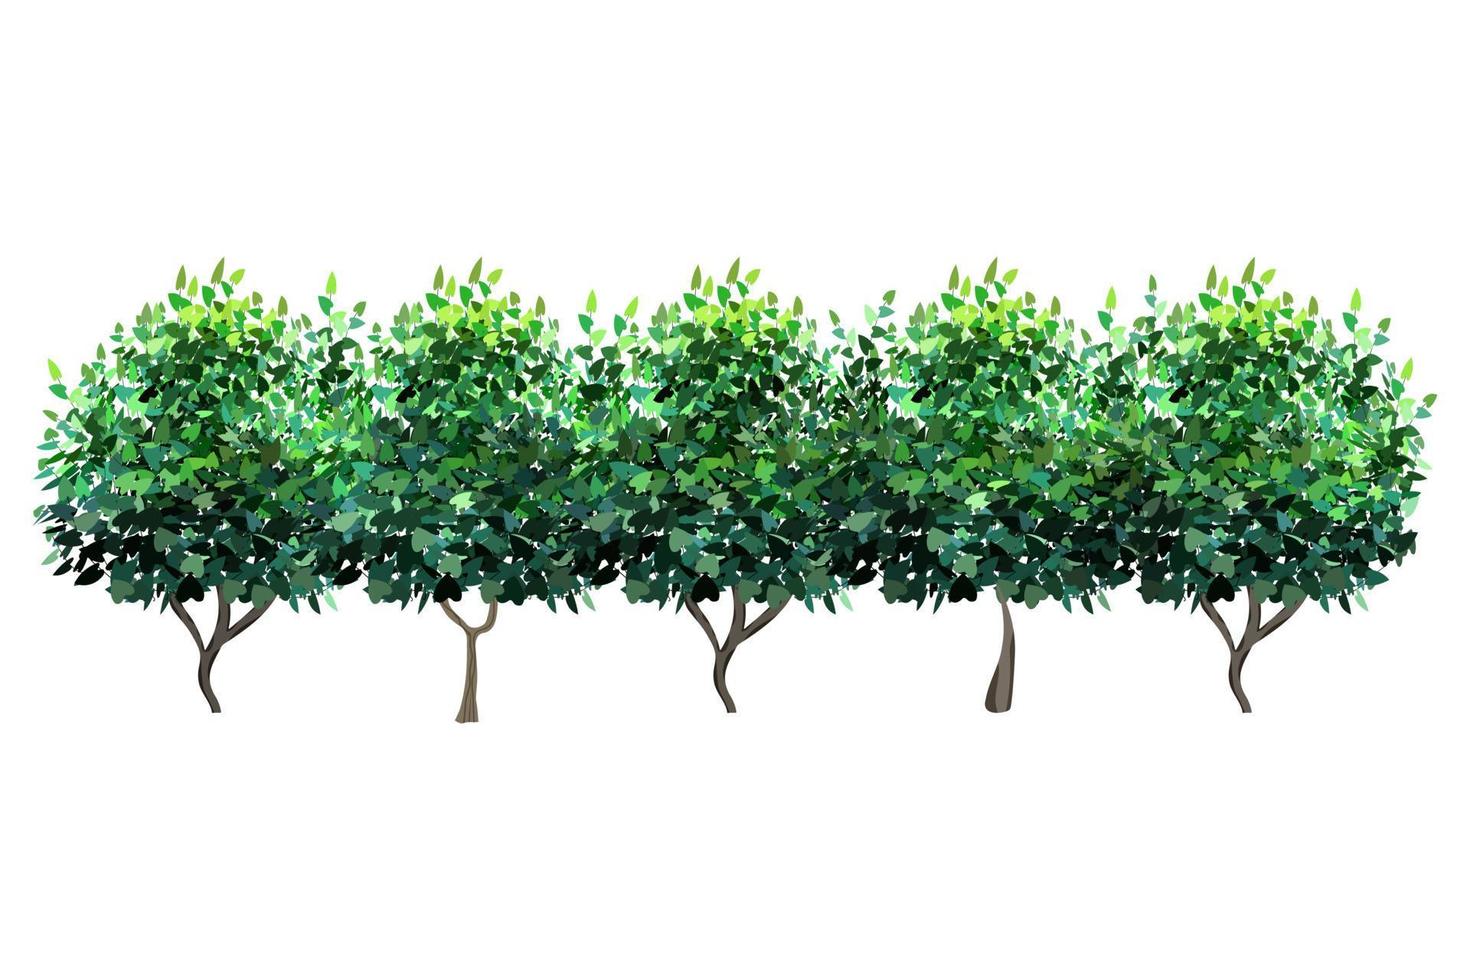 siergroene plant in de vorm van een haag.klimopboog.realistische tuinstruik, seizoensstruik, buxus, boomkroonstruikblad. vector